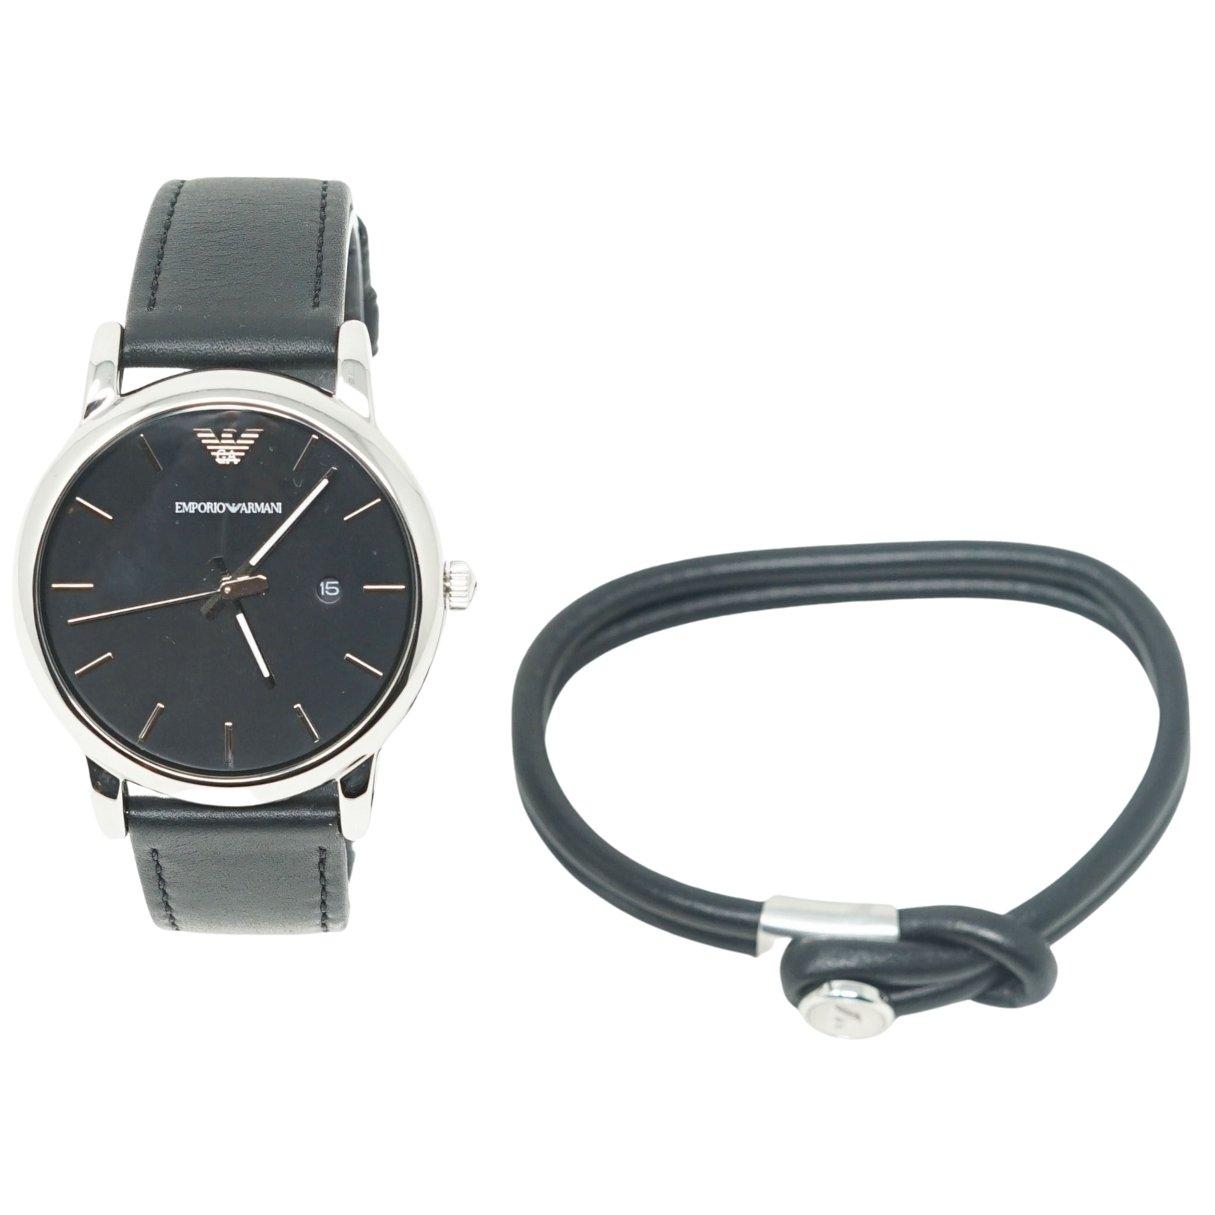 Часы с черным кожаным ремешком Emporio Armani, серебро цена и фото